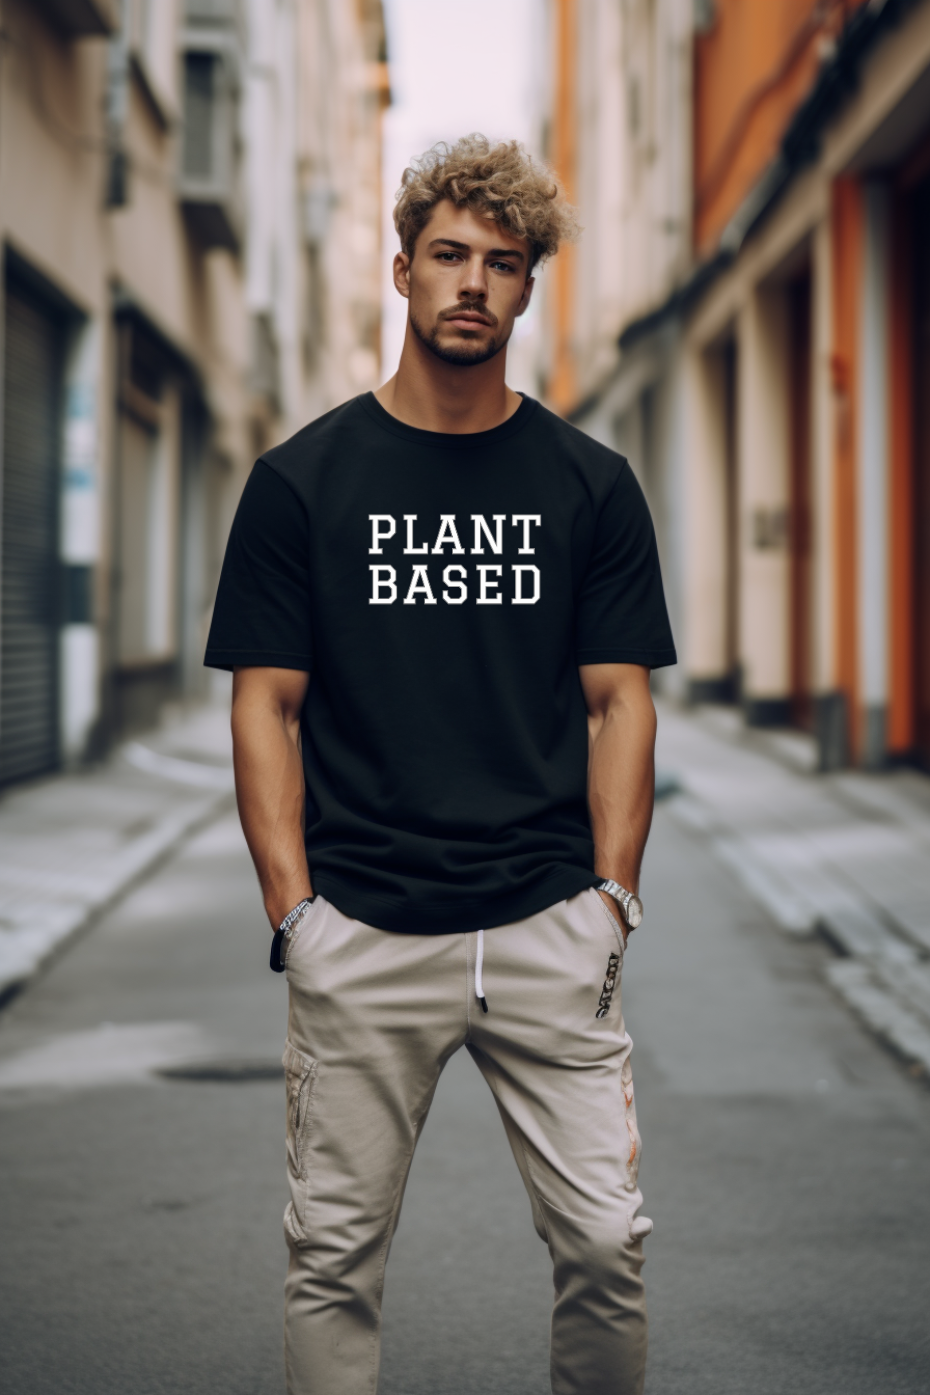 Plant Based Unisex Basic Softstyle T-Shirt